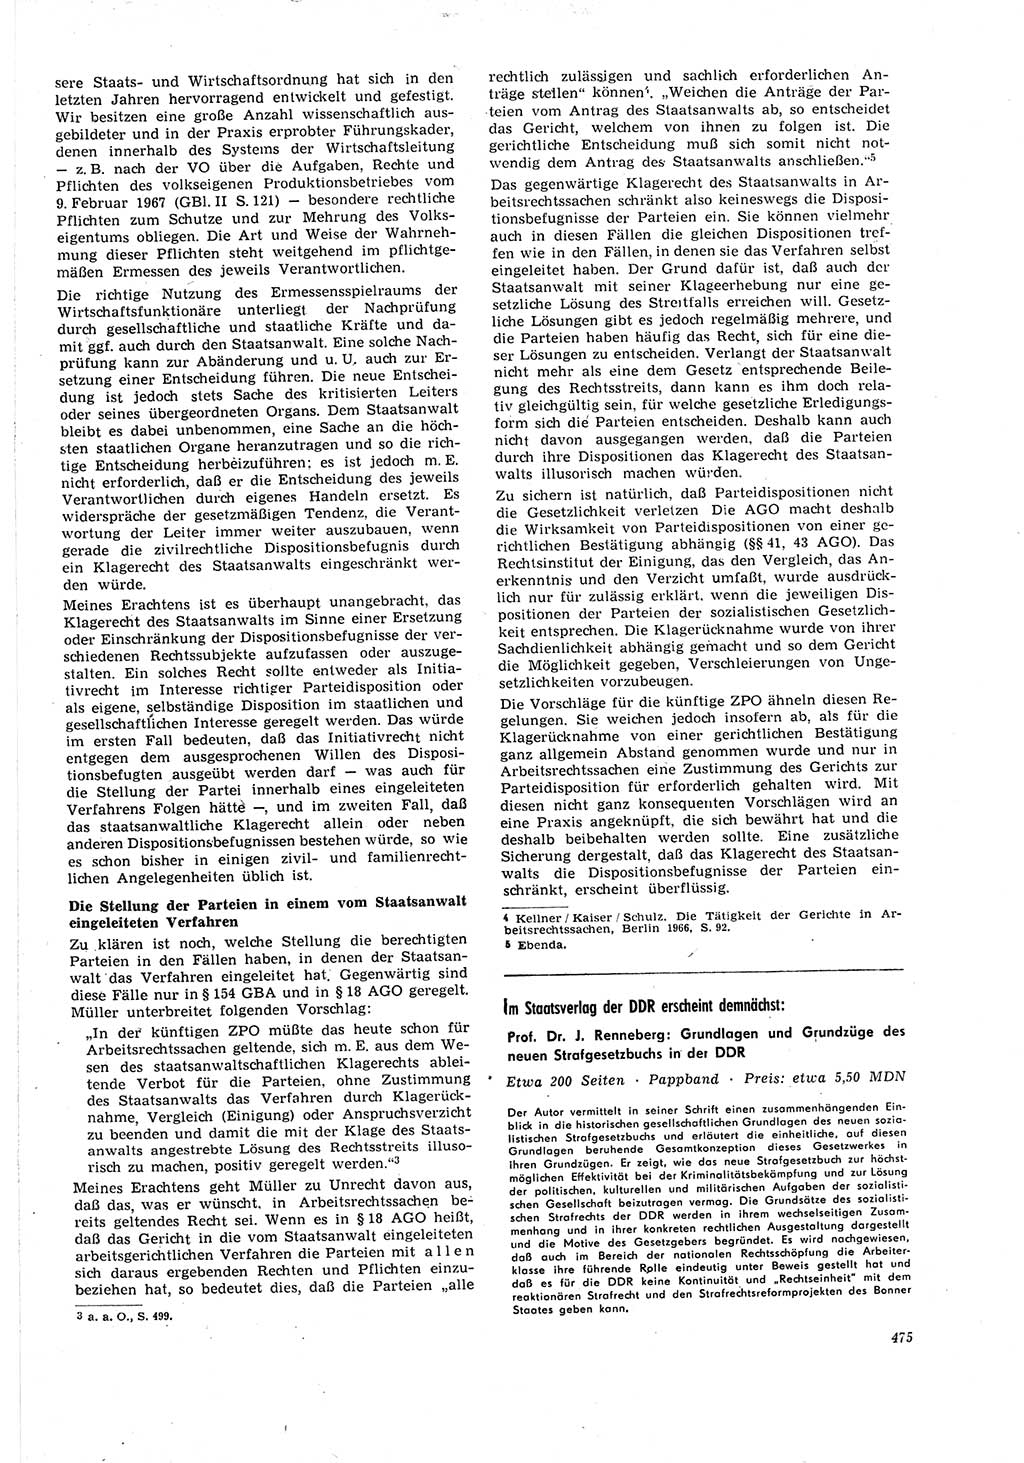 Neue Justiz (NJ), Zeitschrift für Recht und Rechtswissenschaft [Deutsche Demokratische Republik (DDR)], 21. Jahrgang 1967, Seite 475 (NJ DDR 1967, S. 475)